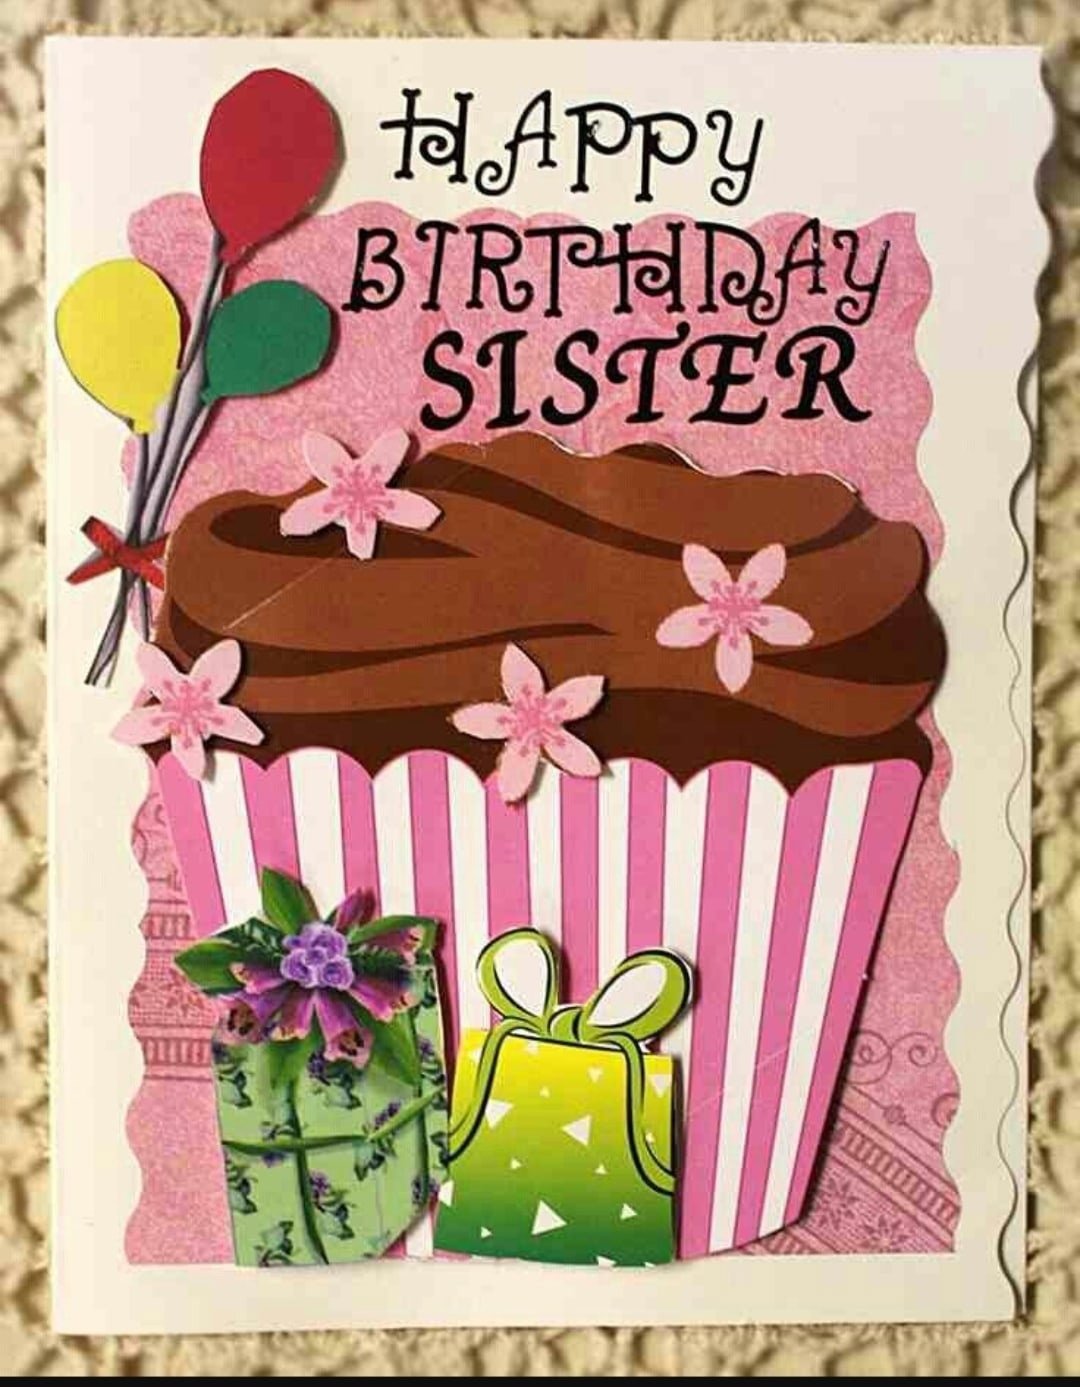 Sister s birthday. Открытка с днём рождения. Стильные открытки с днем рождения. Стильное поздравление с днем рождения. Открытка с днём рождения на английском.